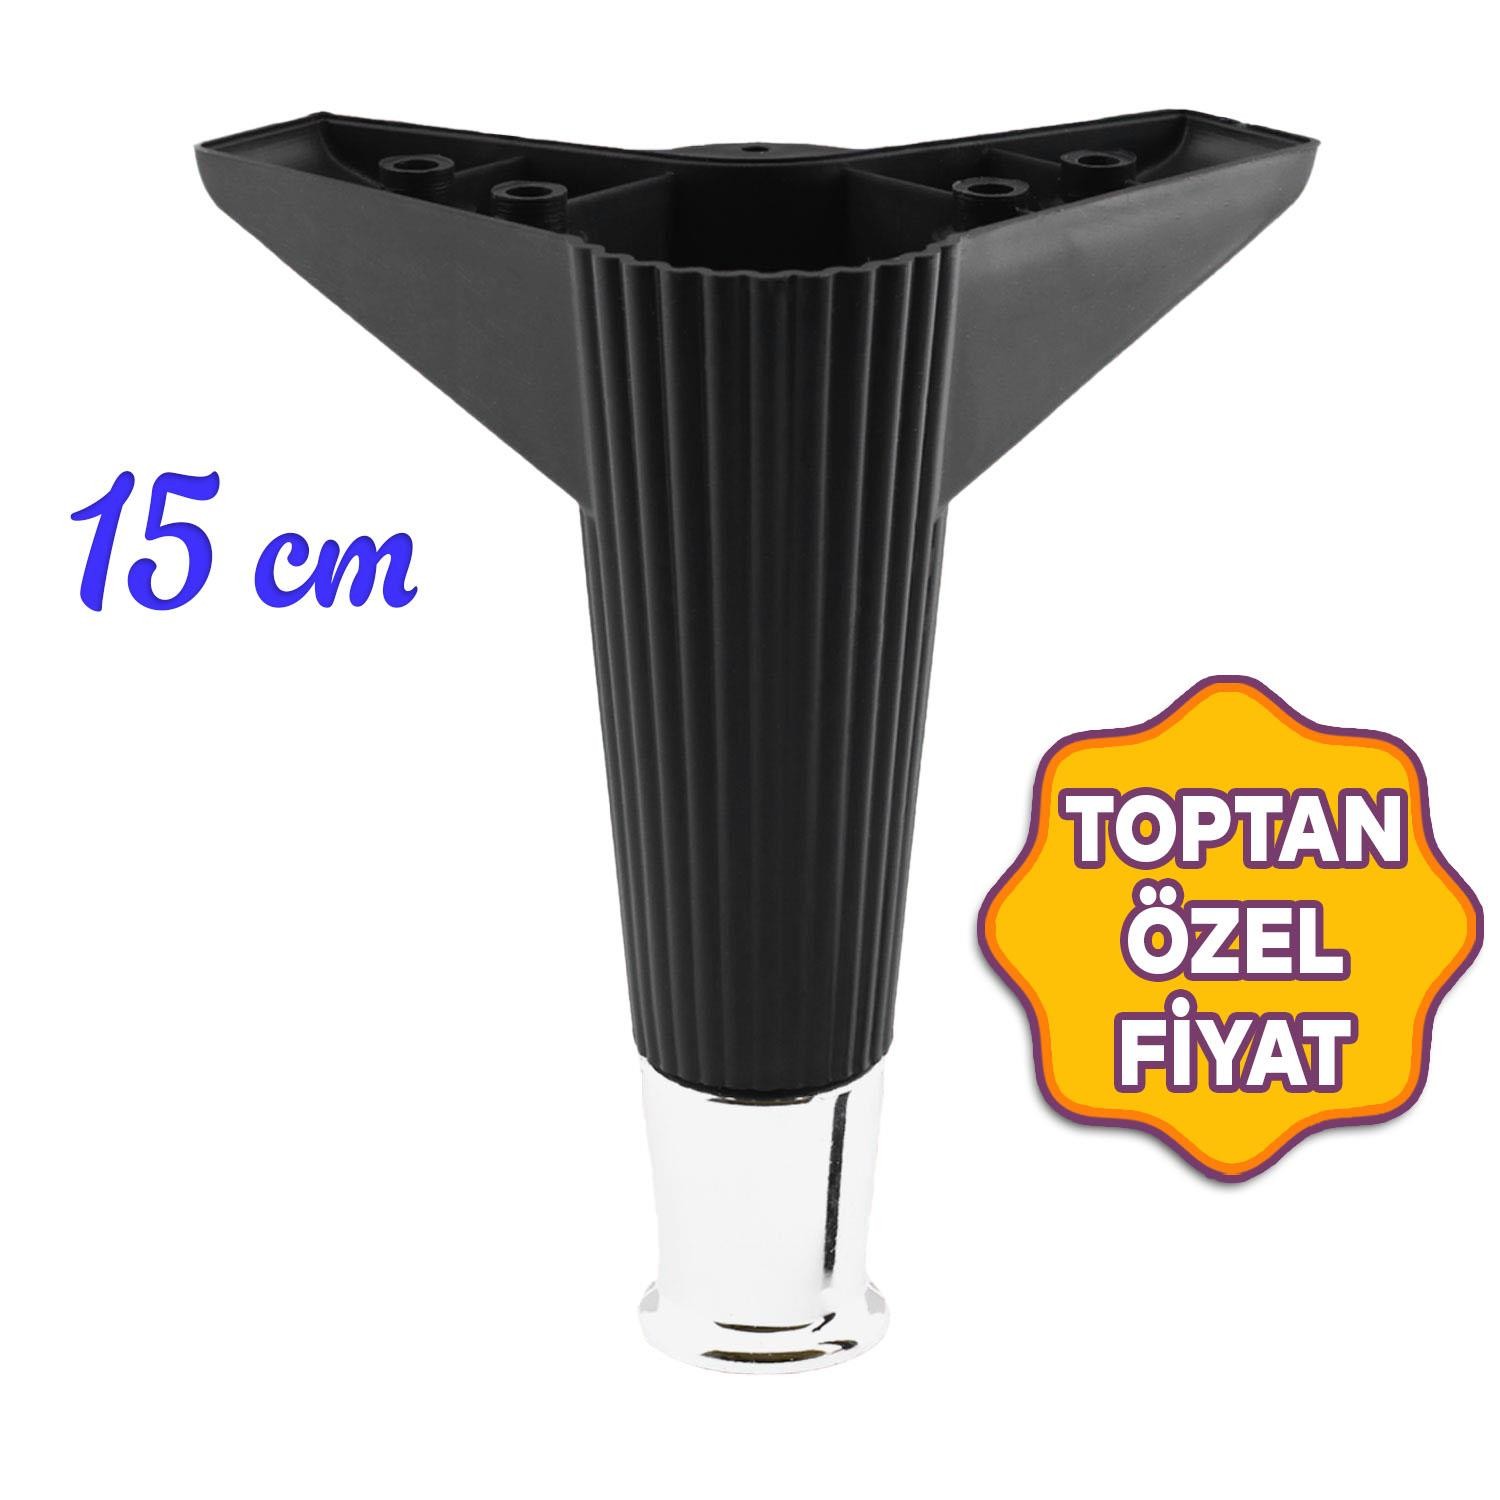 Elista Lüks Mobilya Kanepe Koltuk Baza TV Ünitesi Ayağı Ayakları 15 cm Siyah Krom Toptan Satış